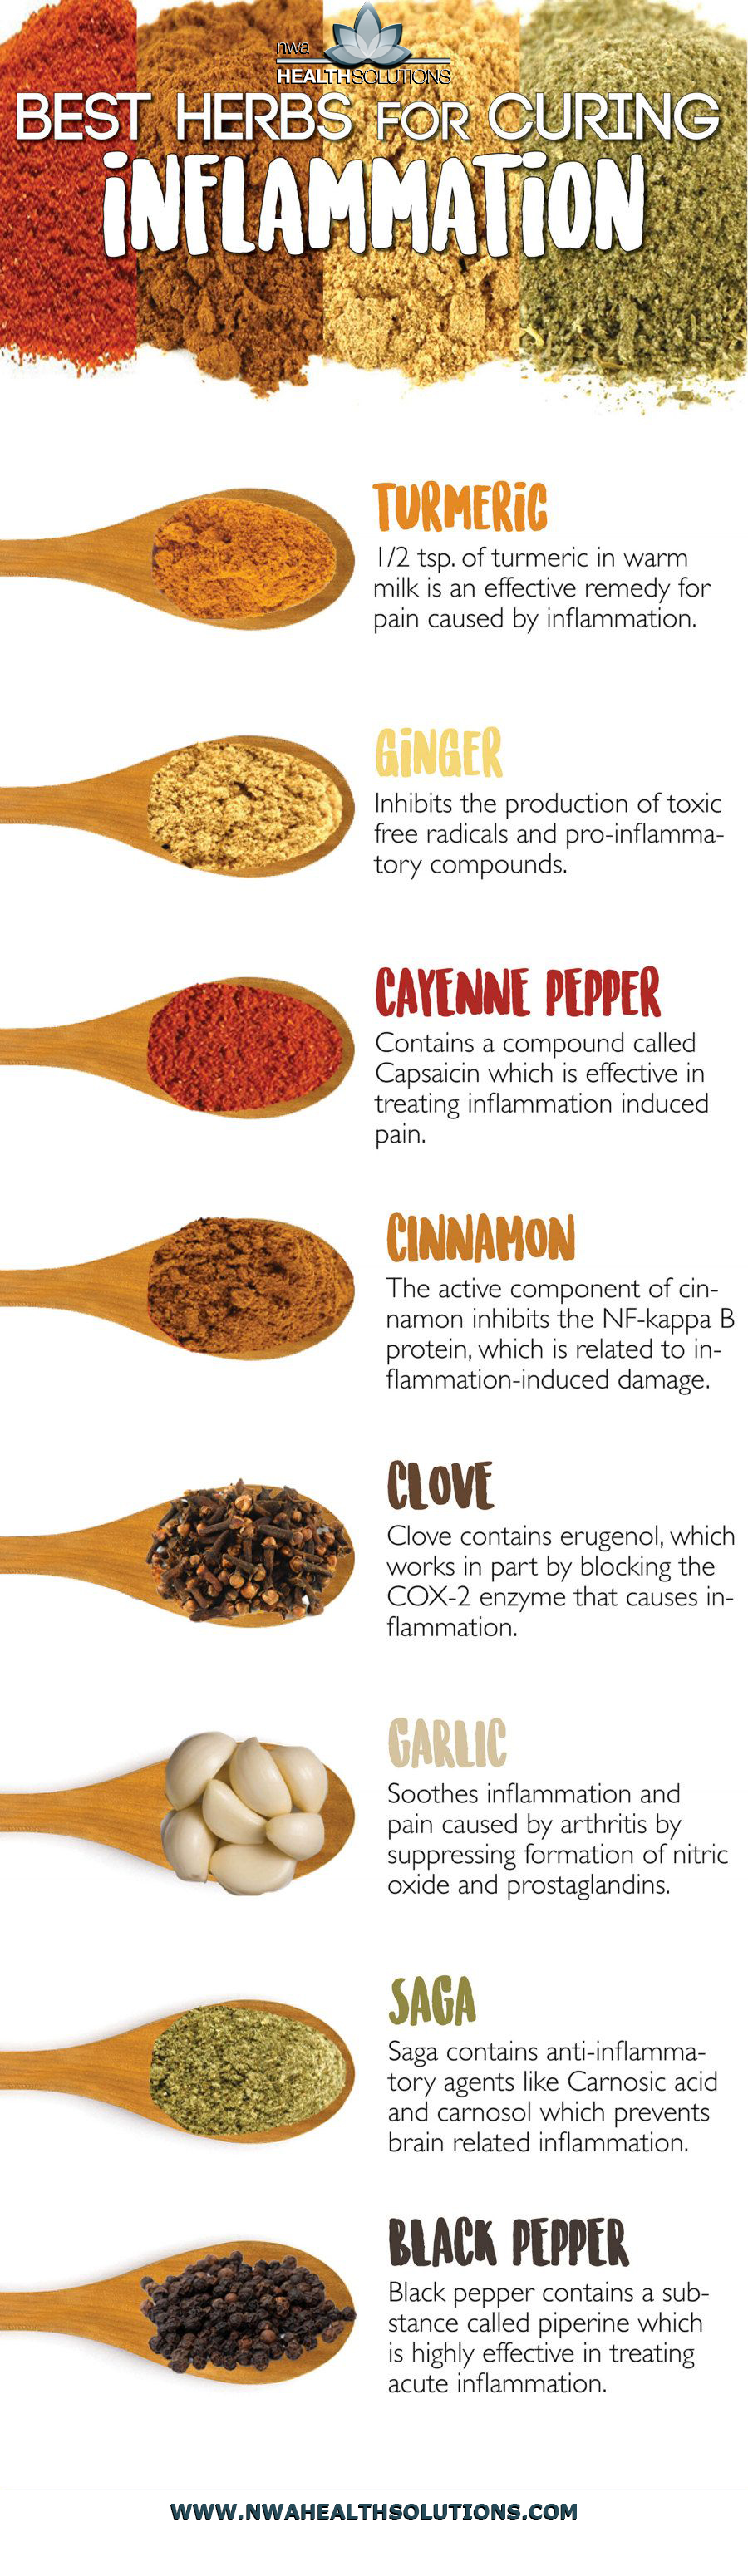 Cayenne pepper anti-inflammatory properties